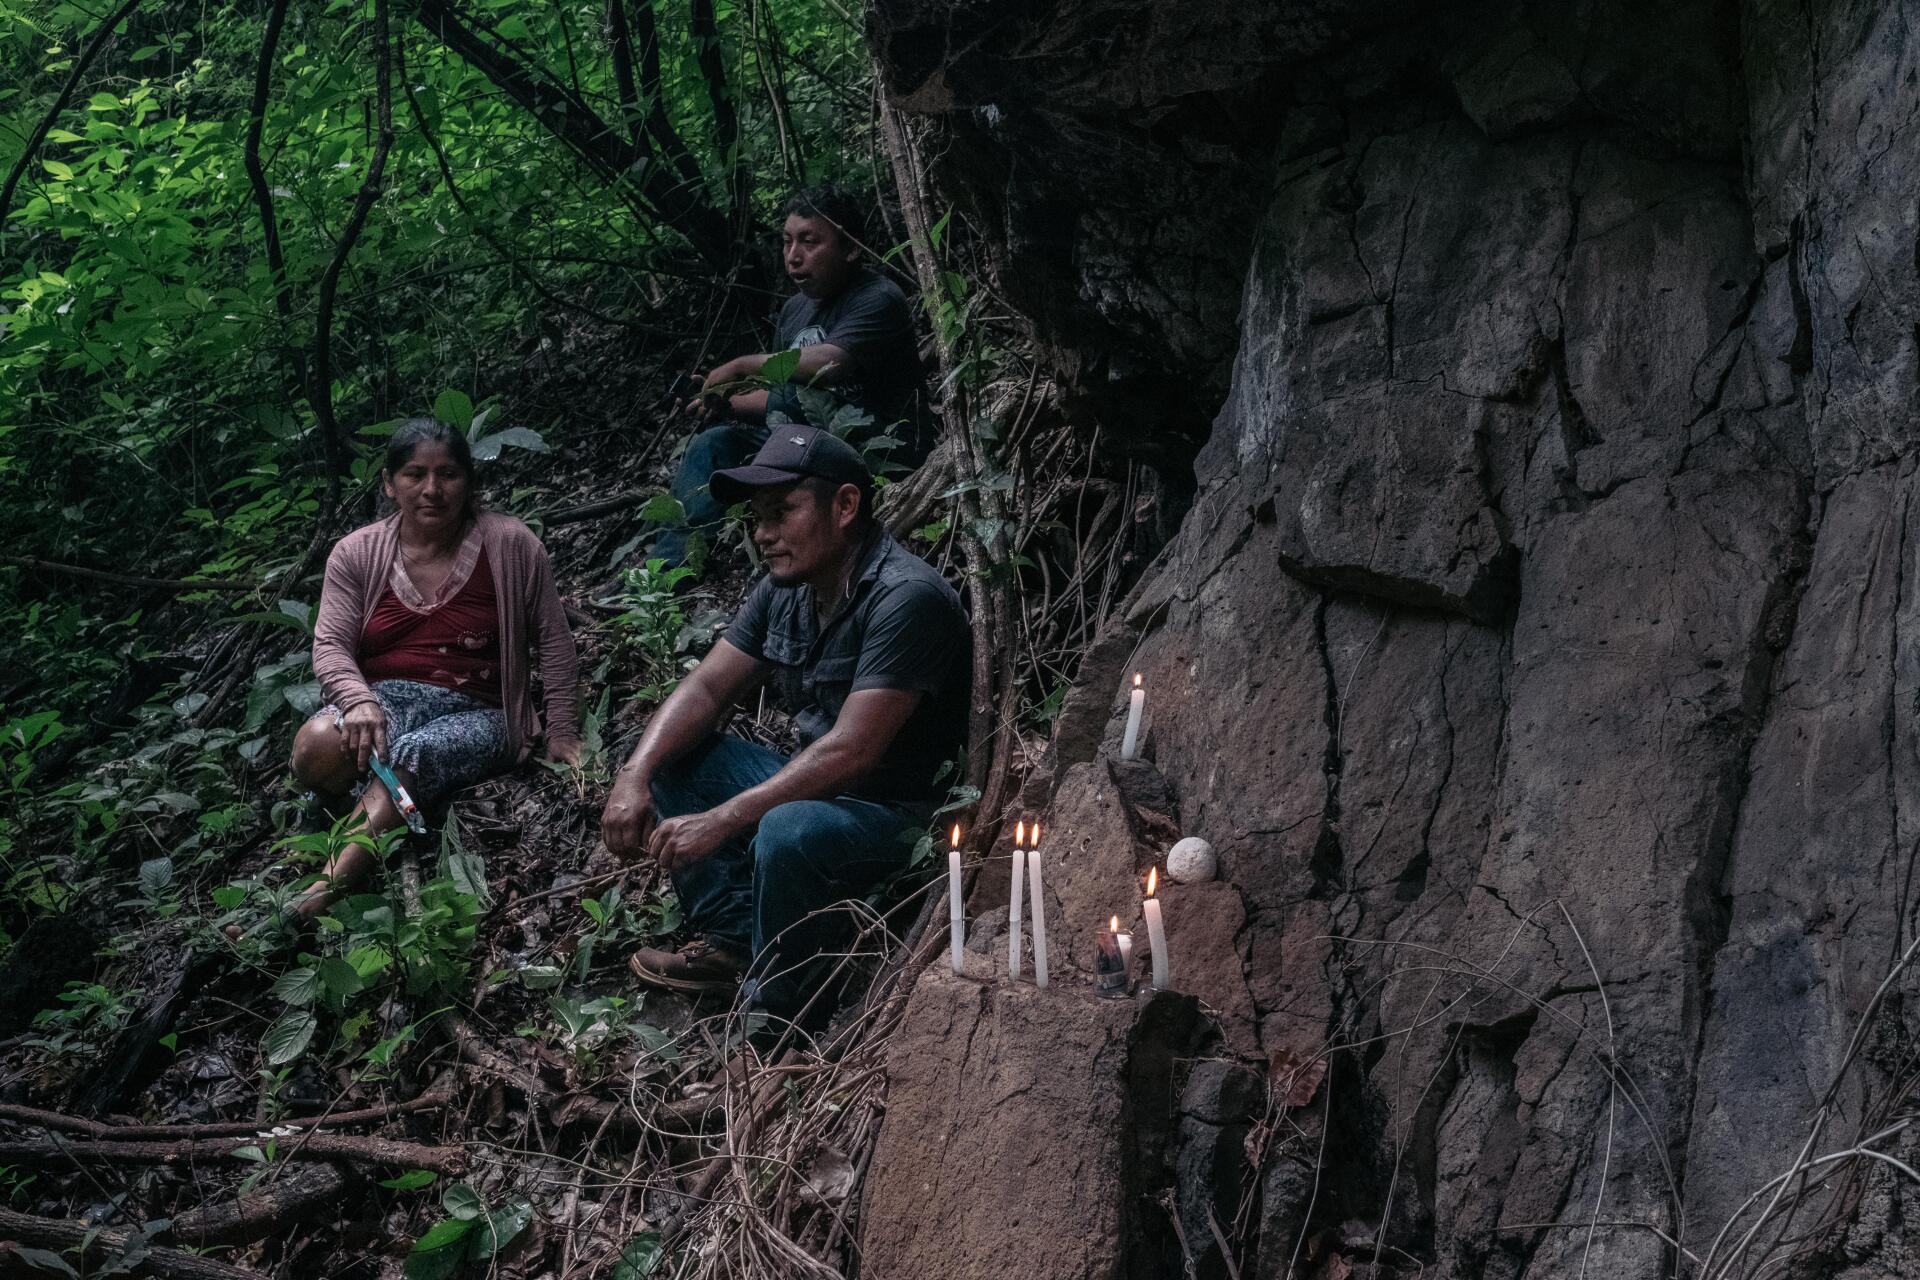 Fidel Perez et son épouse devant ce qui reste de la grotte du mont Ortiz, près de Cacaopera, où ont été assassinées la mère et la soeur de Fidel et dix autres personnes le 13 décembre 1981. A l’âge de 7 ans, Fidel Perez a survécu à l’explosion d'une grenade qu’un soldat a lancée dans la grotte où il s’était réfugié avec sa famille et ses voisins.